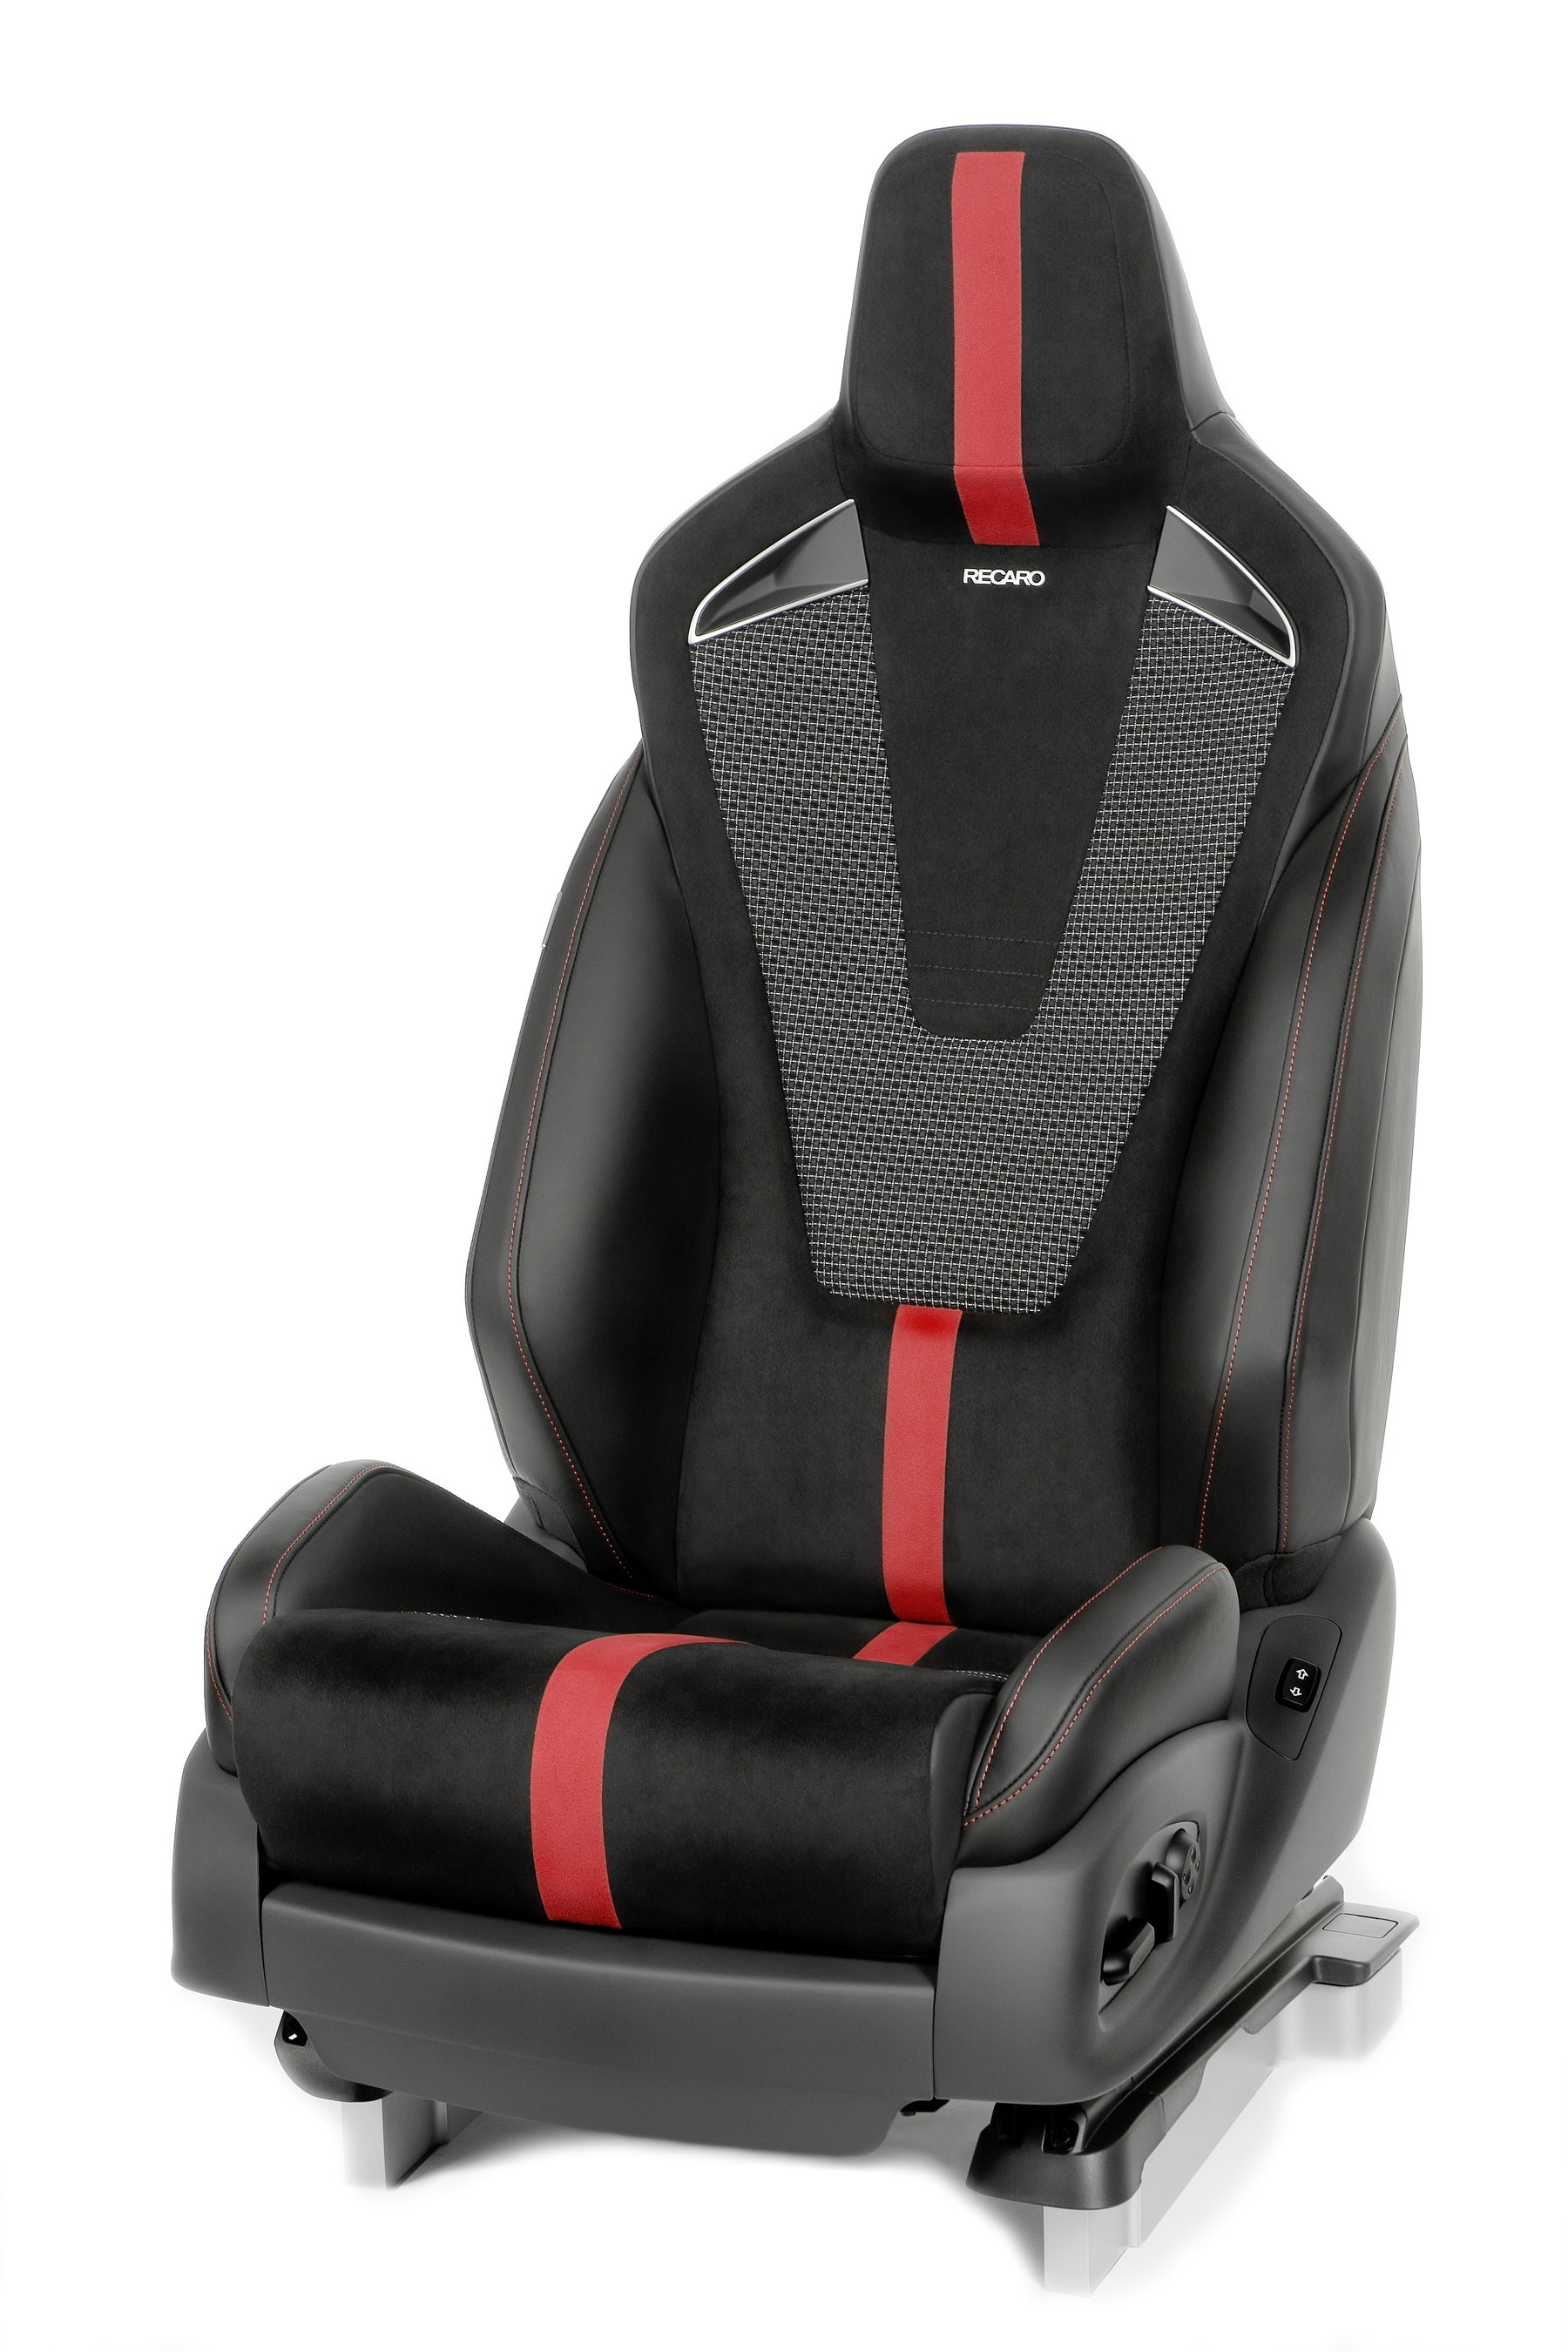 RECARO Automotive Seating presenta tres prototipos de asientos de  rendimiento para todos los segmentos de mercado